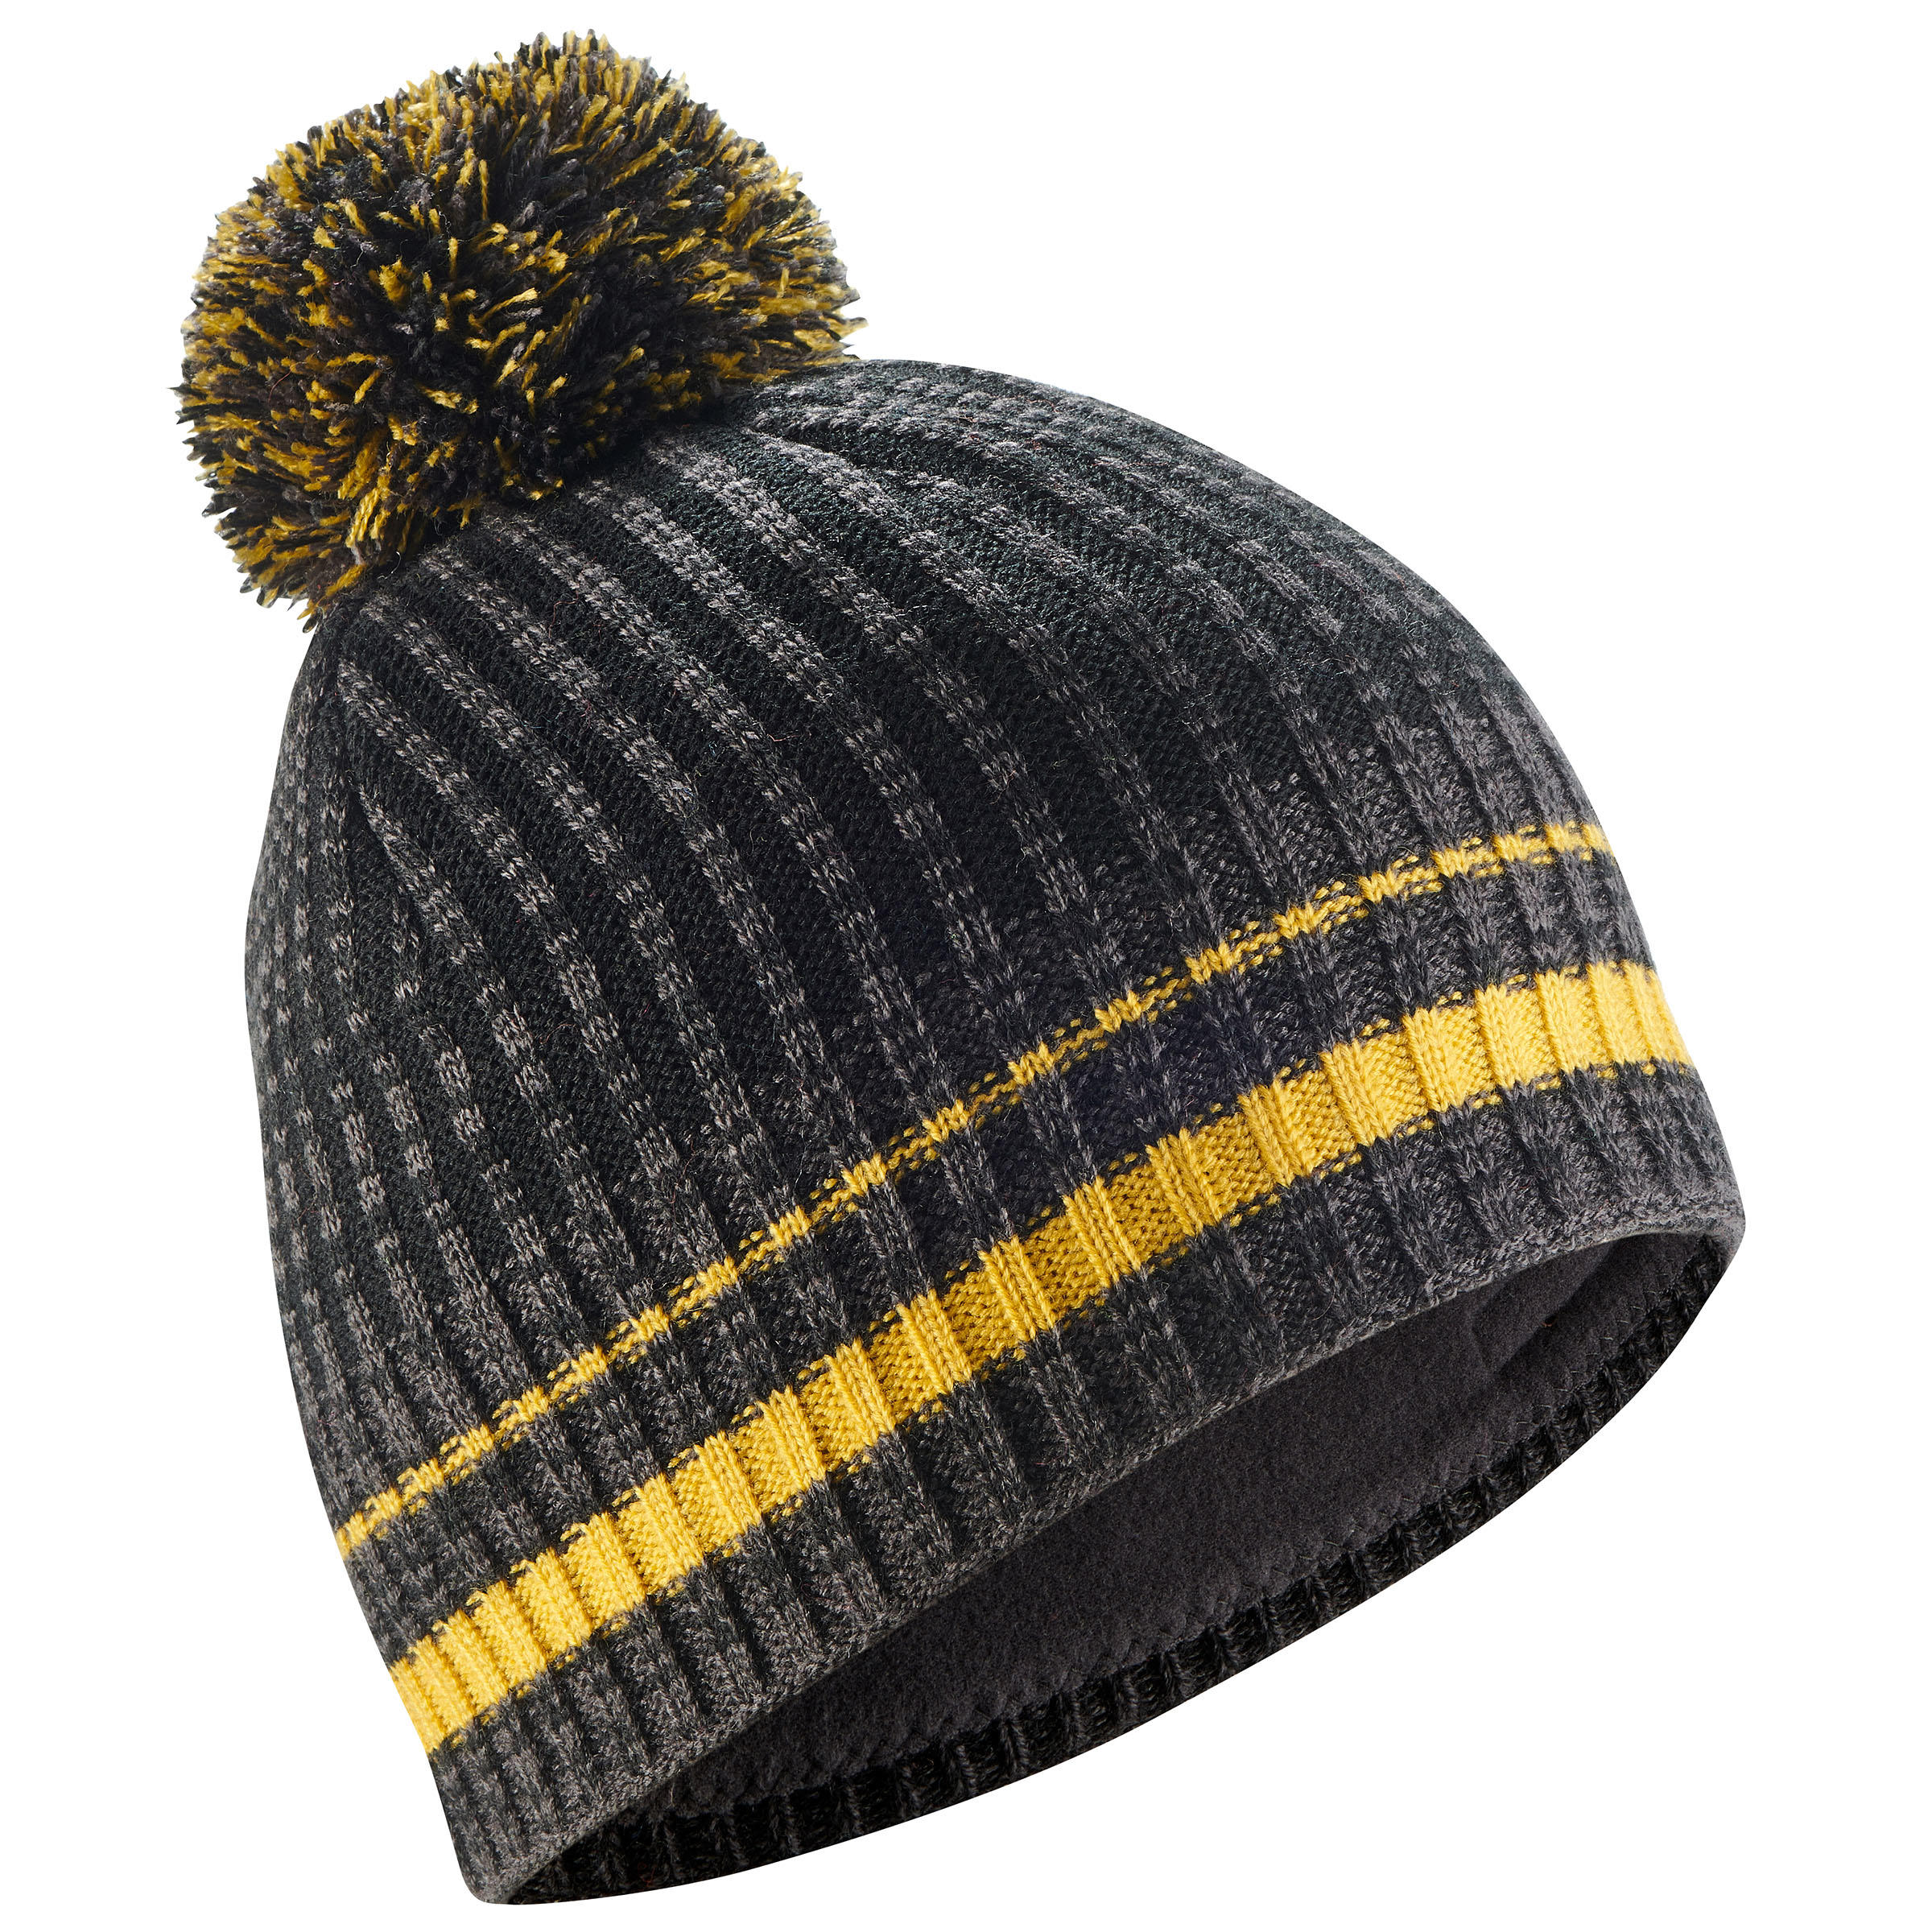 Winter Caps - Beanies \u0026 Woolen Caps for 